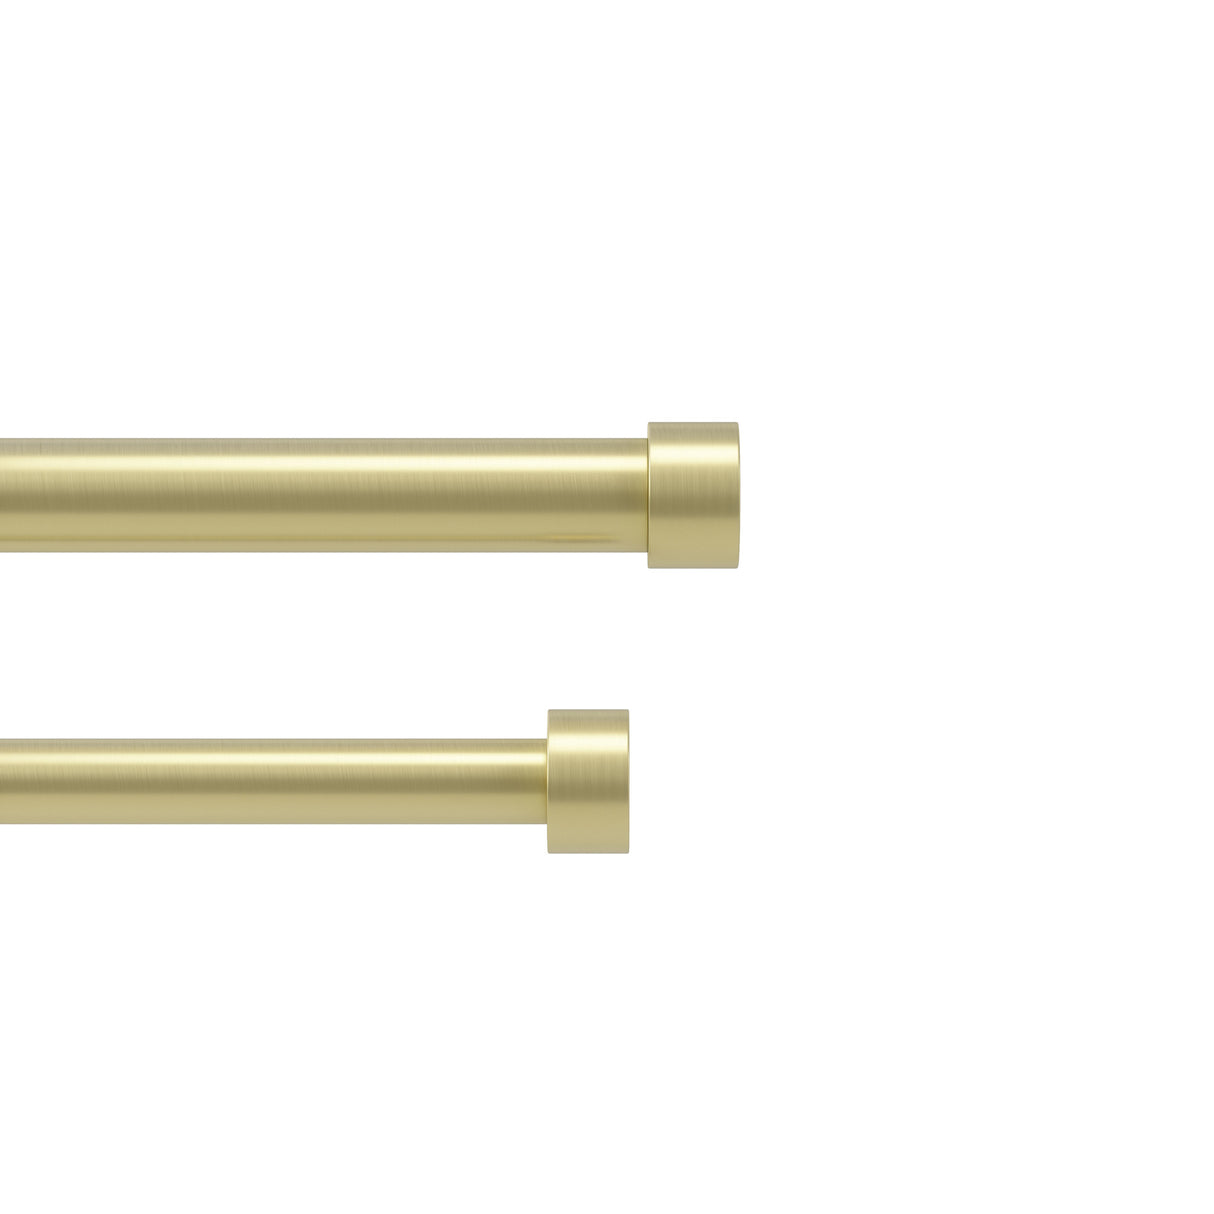 Double Curtain Rods | color: Brass | size: 120-180" (305-457 cm) | diameter: 1" (2.5 cm)